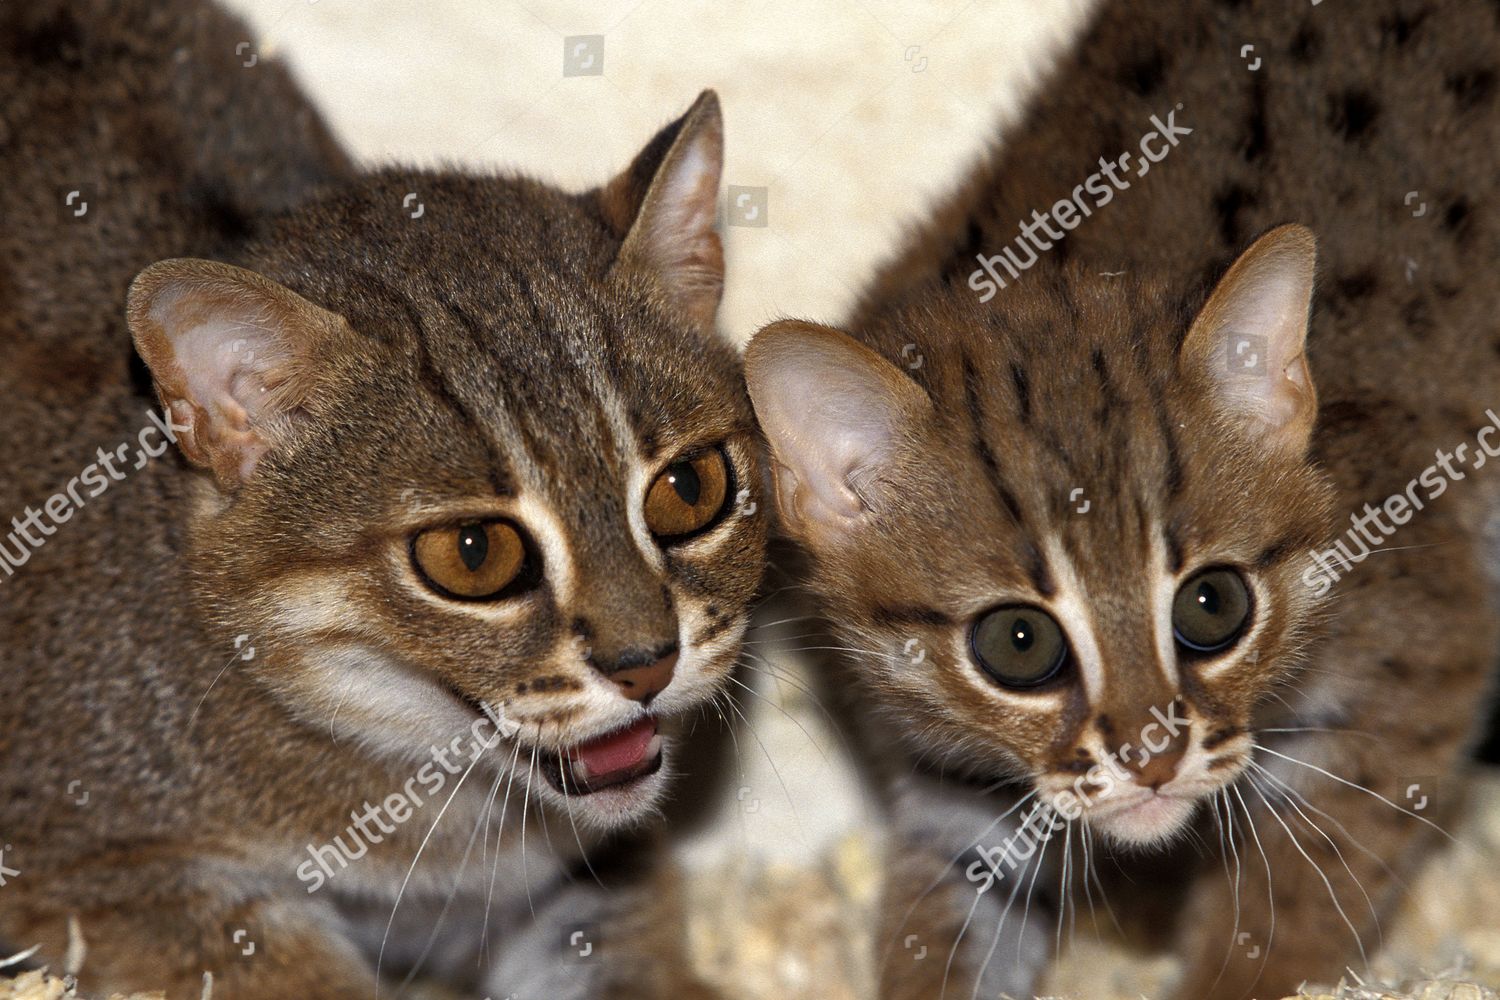 Ржавая кошка: обаятельная маленькая хищница